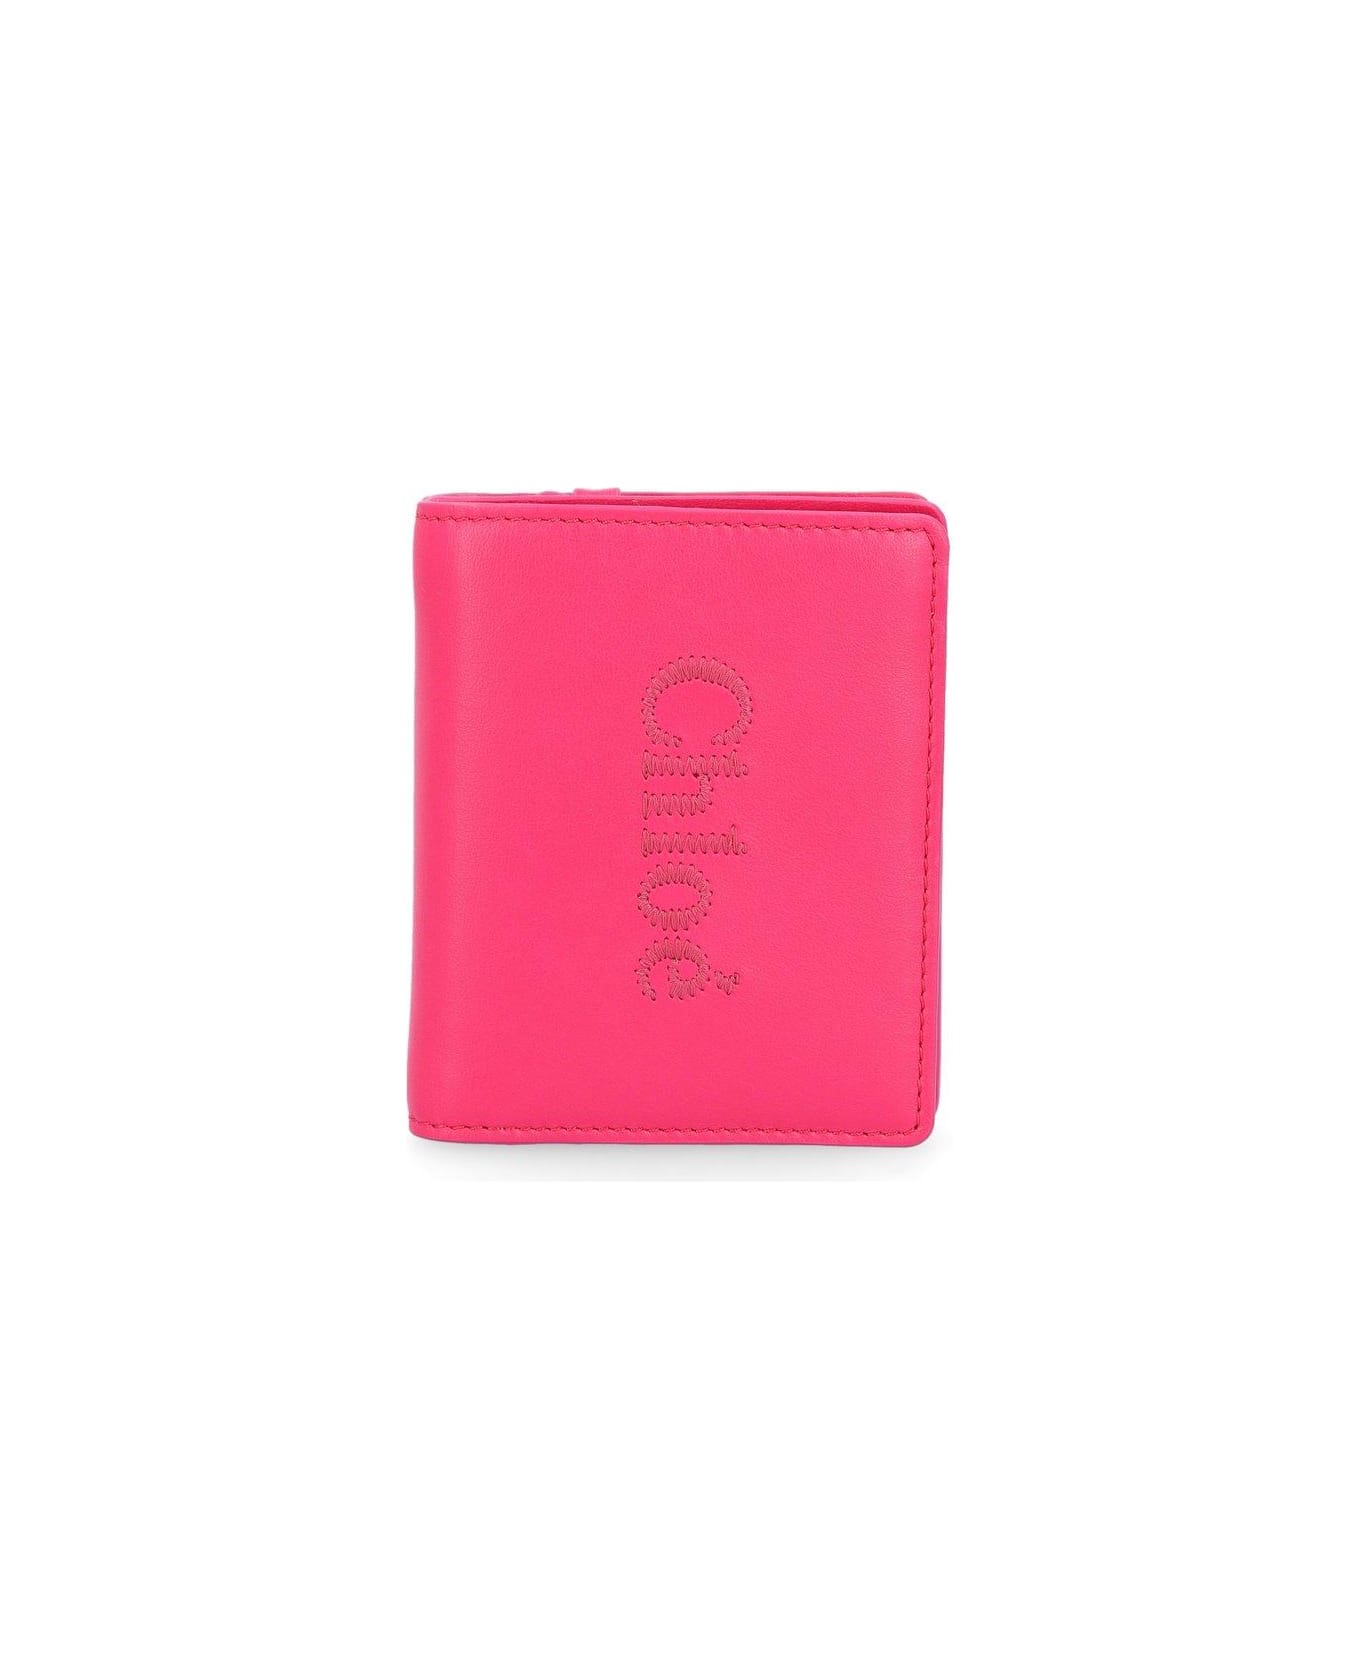 Chloé Sense Compact Bi-fold Wallet - Fizzy Pink 財布